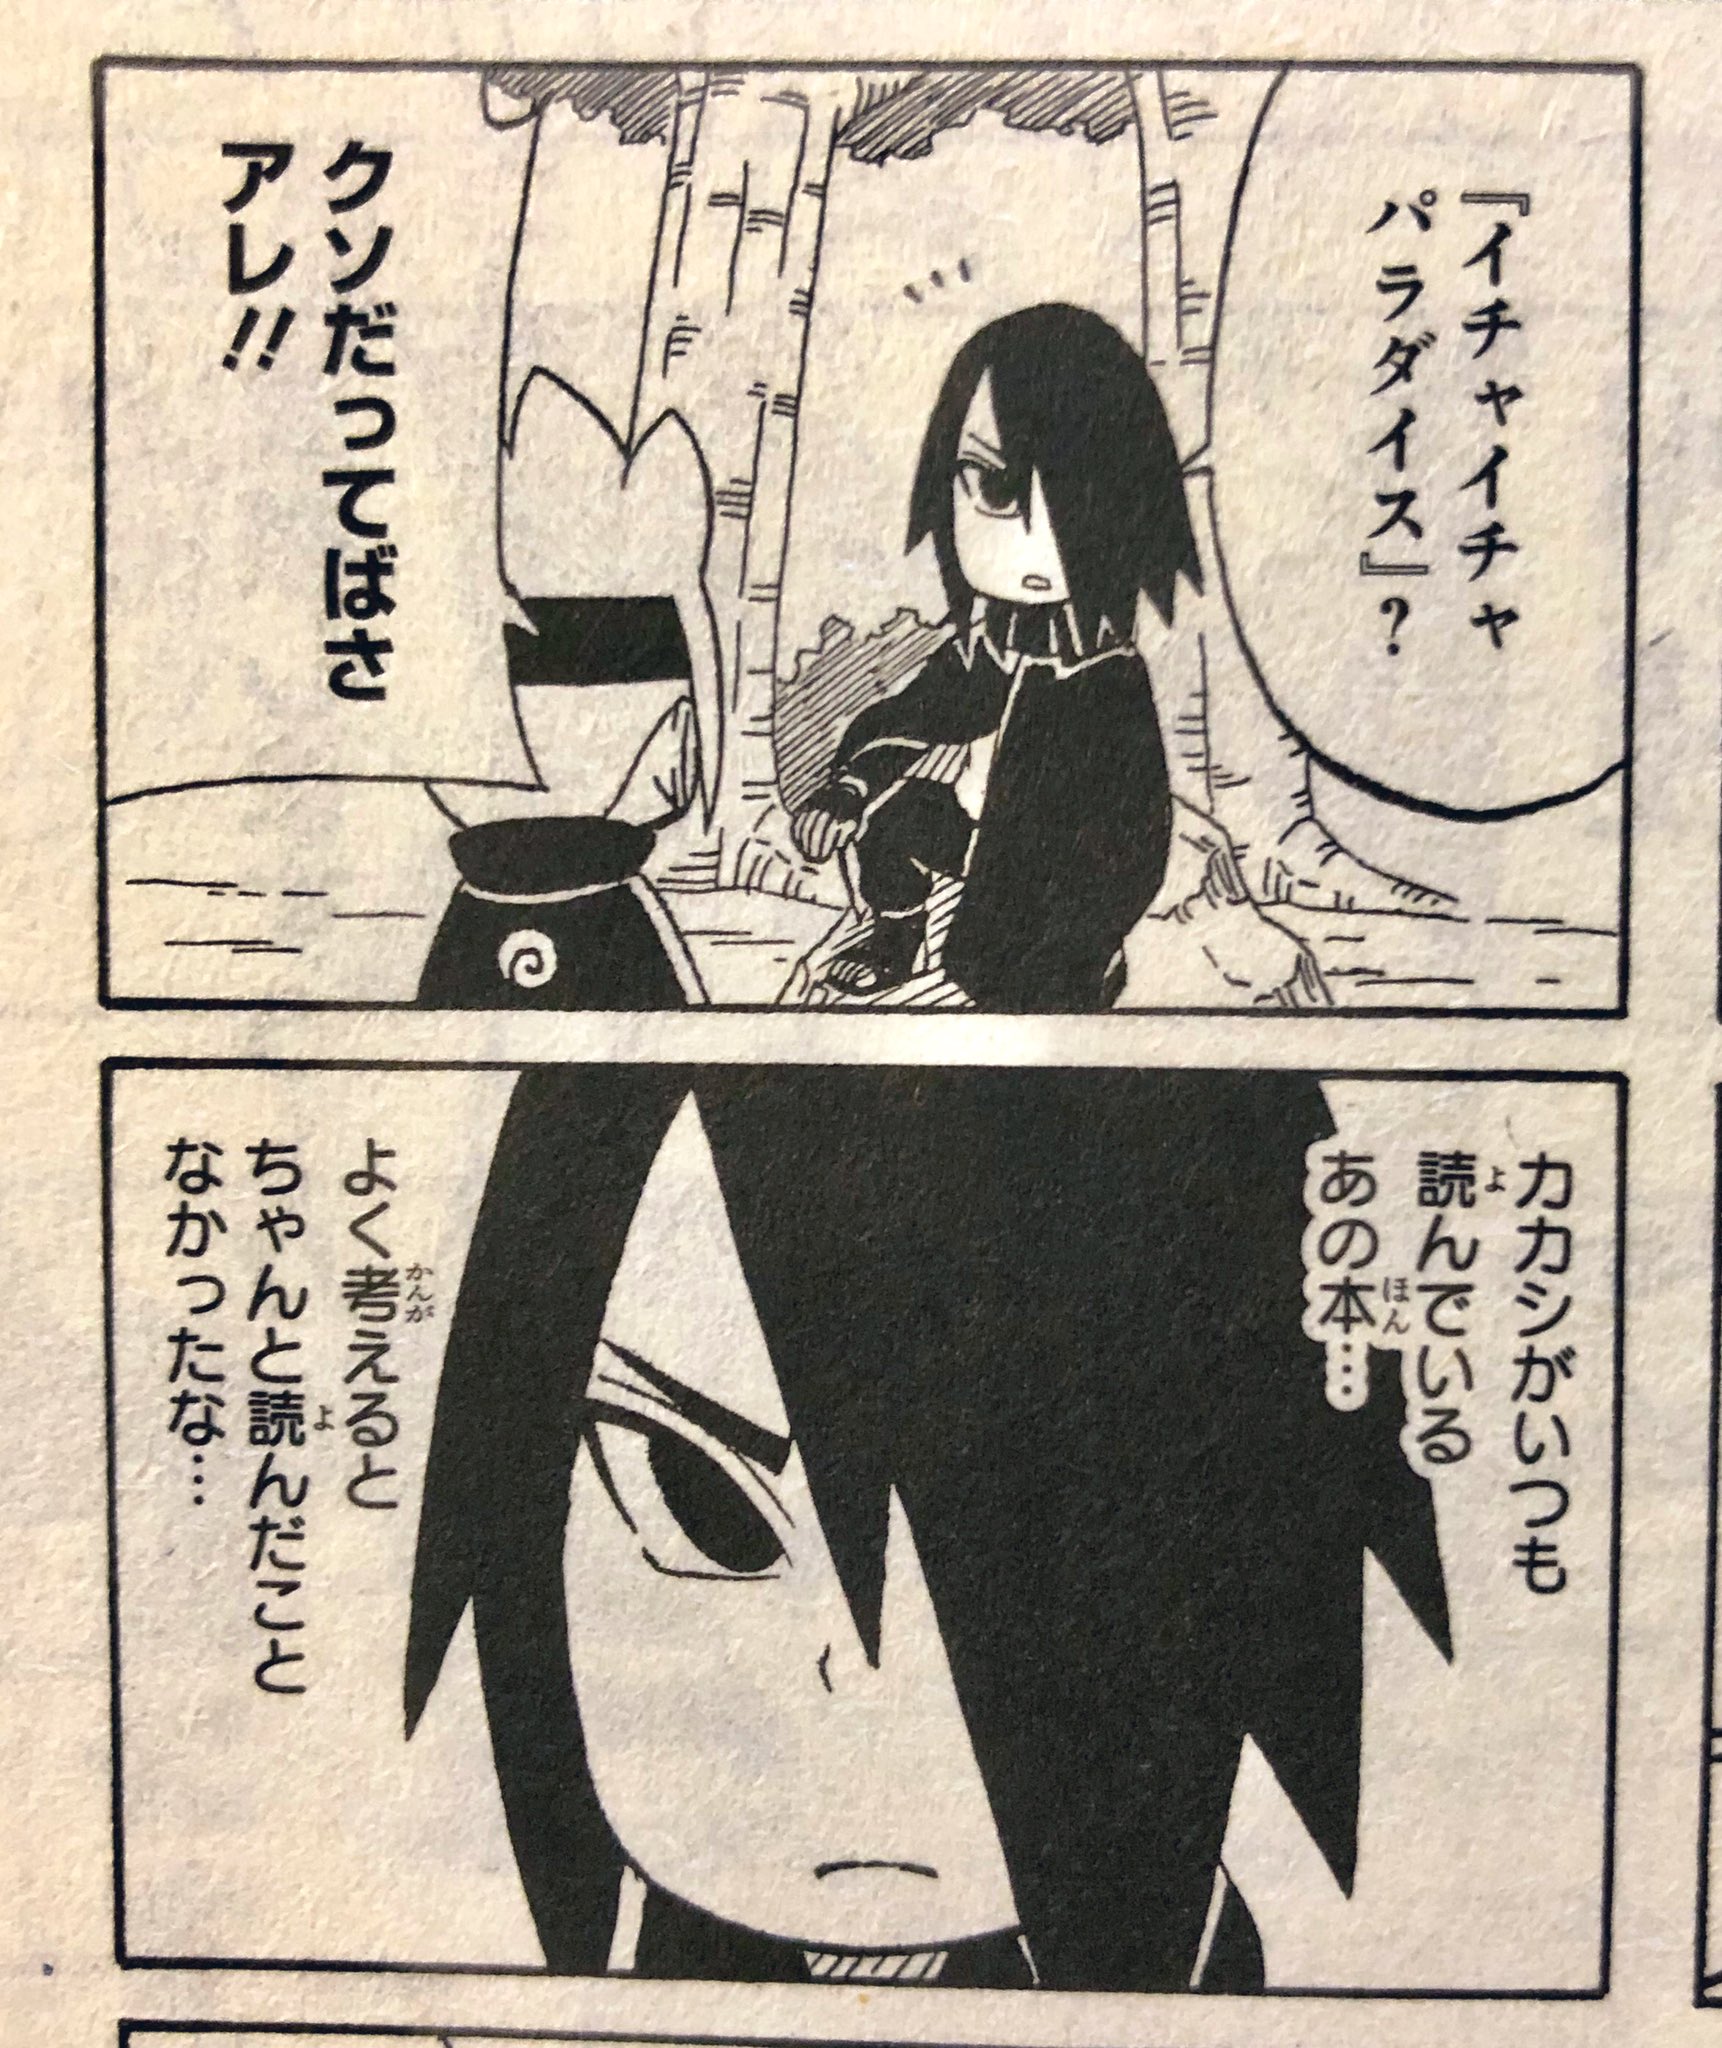 みき A Continuation Of Icha Icha Paradise Story In Boruto Sd 1 Boruto Sees Sasuke After Reading The Book